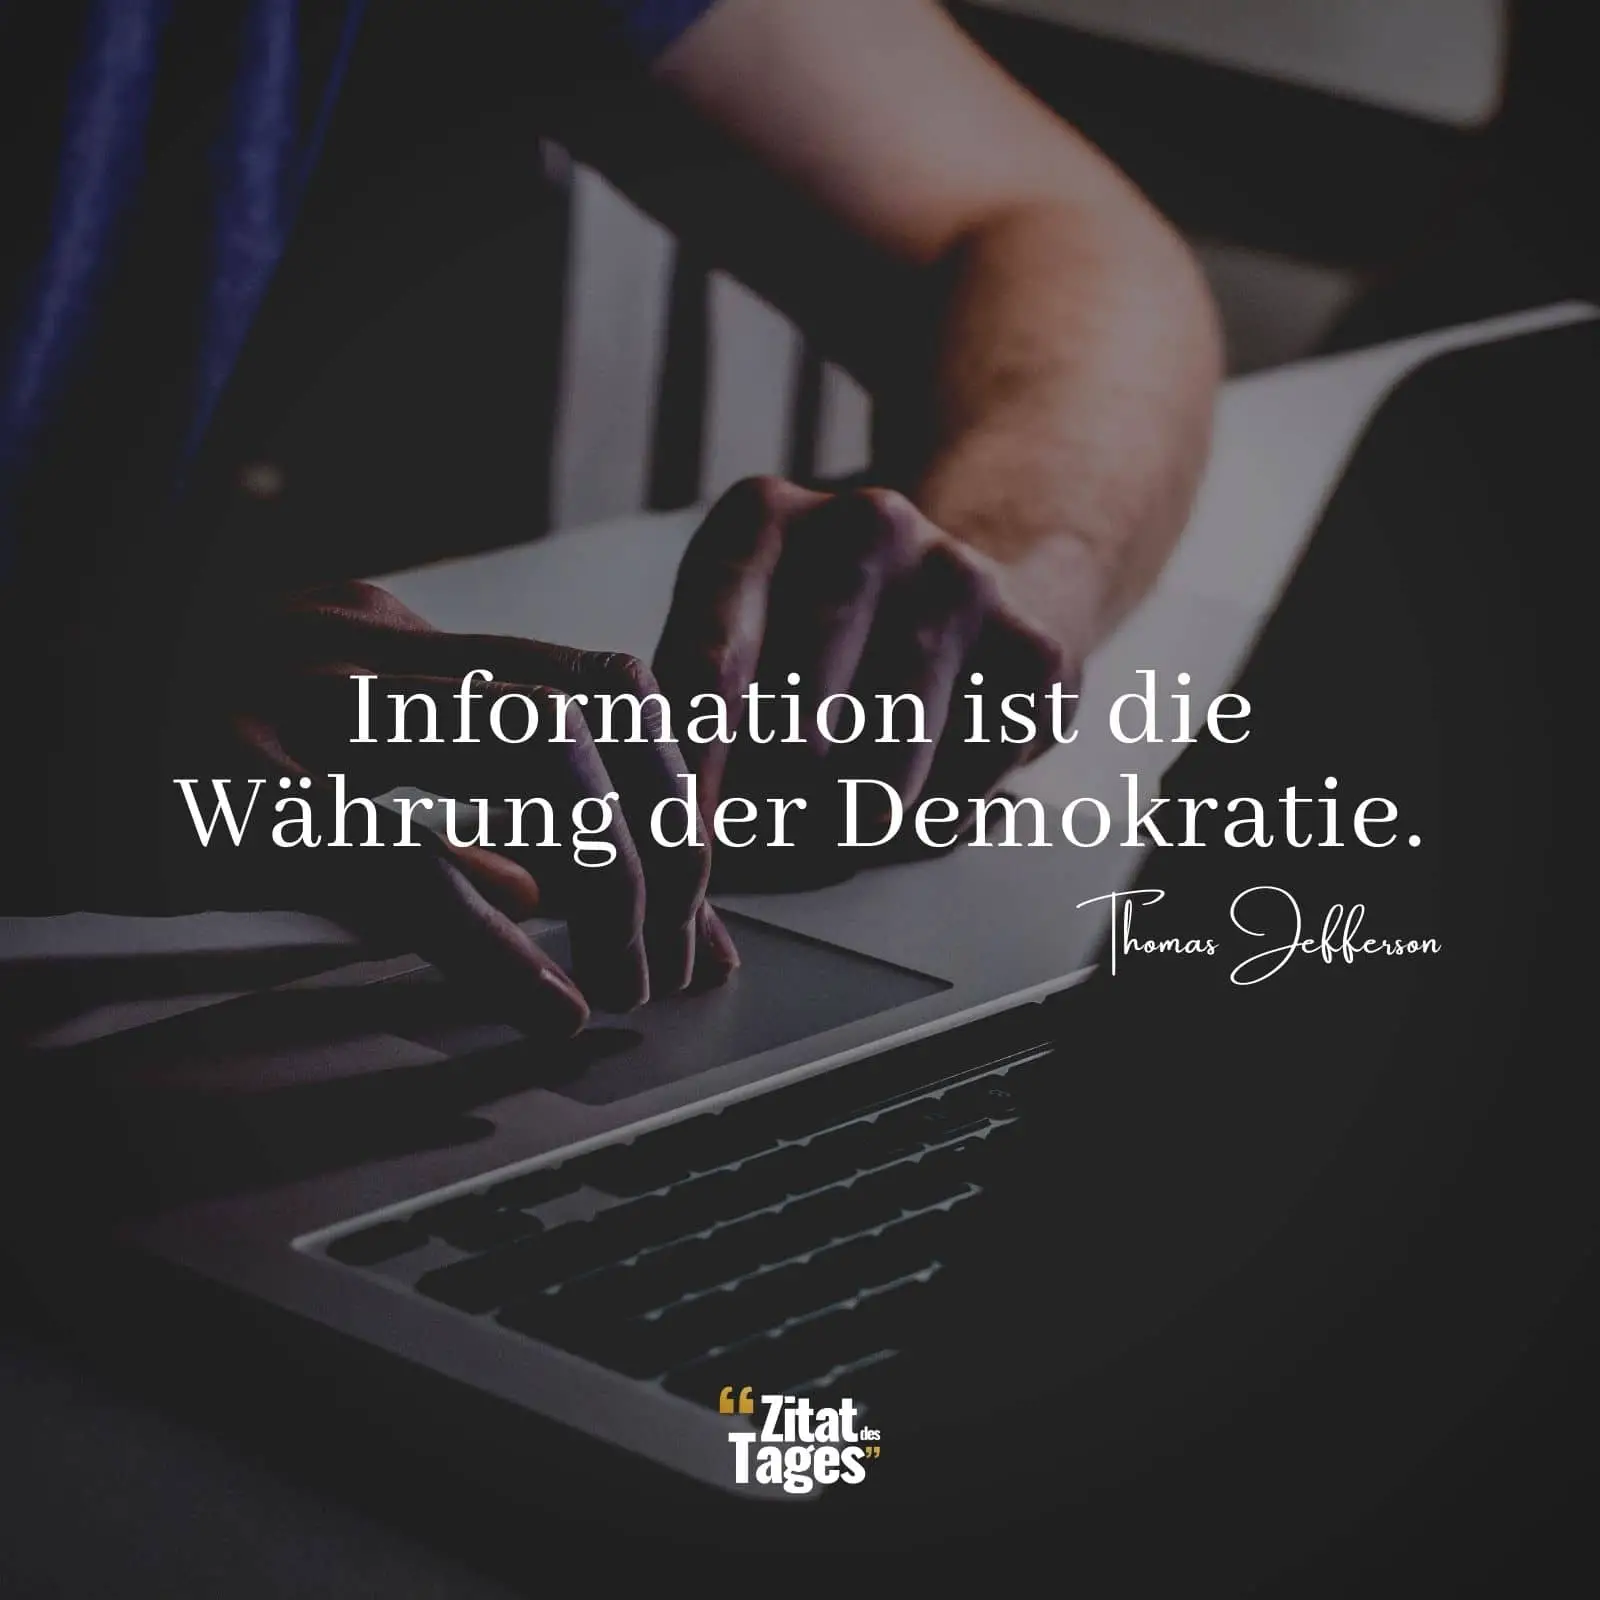 Information ist die Währung der Demokratie. - Thomas Jefferson